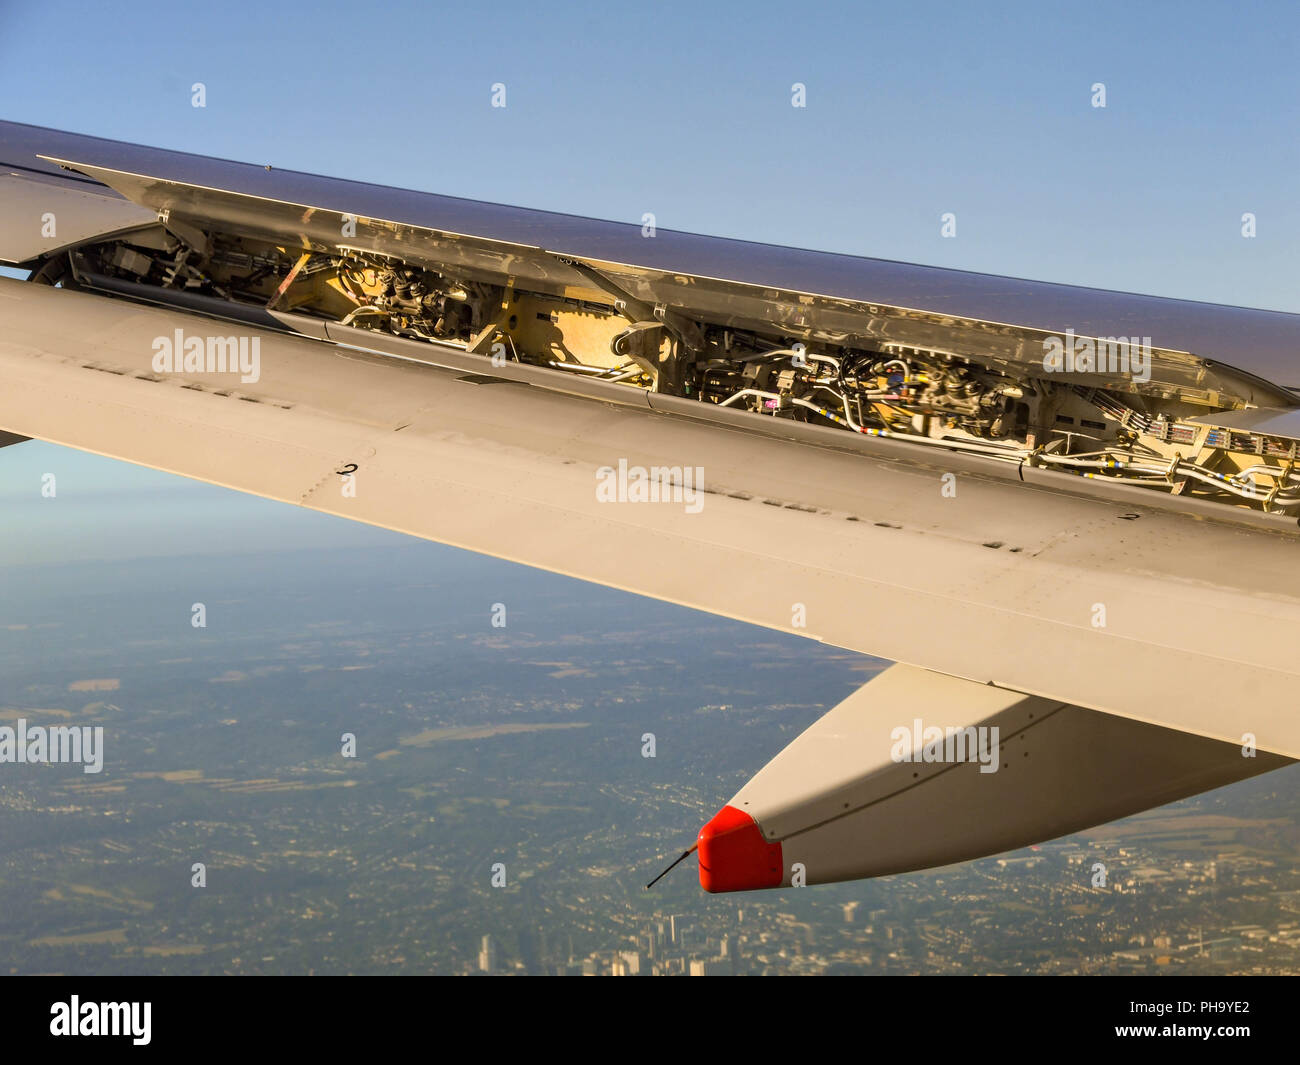 Druckluftbremse Klappe komplett geöffnet auf dem Flügel eines Verkehrsflugzeugs, das Flugzeug zur Landung zu verlangsamen. Stockfoto